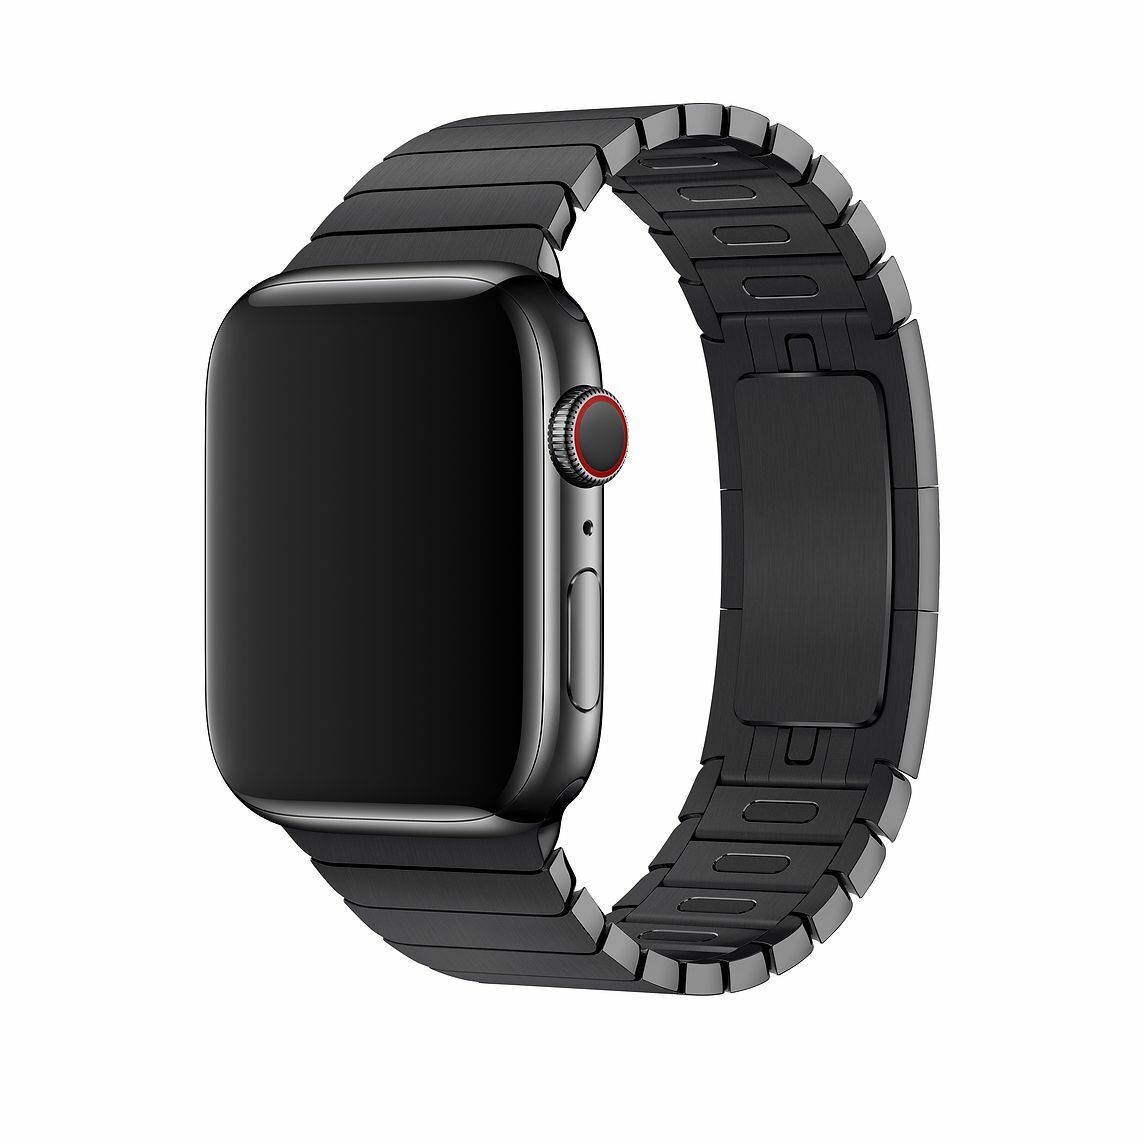 Ремешок для часов смарт вотч. Se часы Apple IWATCH 44mm. Эпл вотч 4. Эпл вотч 7 черные. Apple watch se 44mm Black.